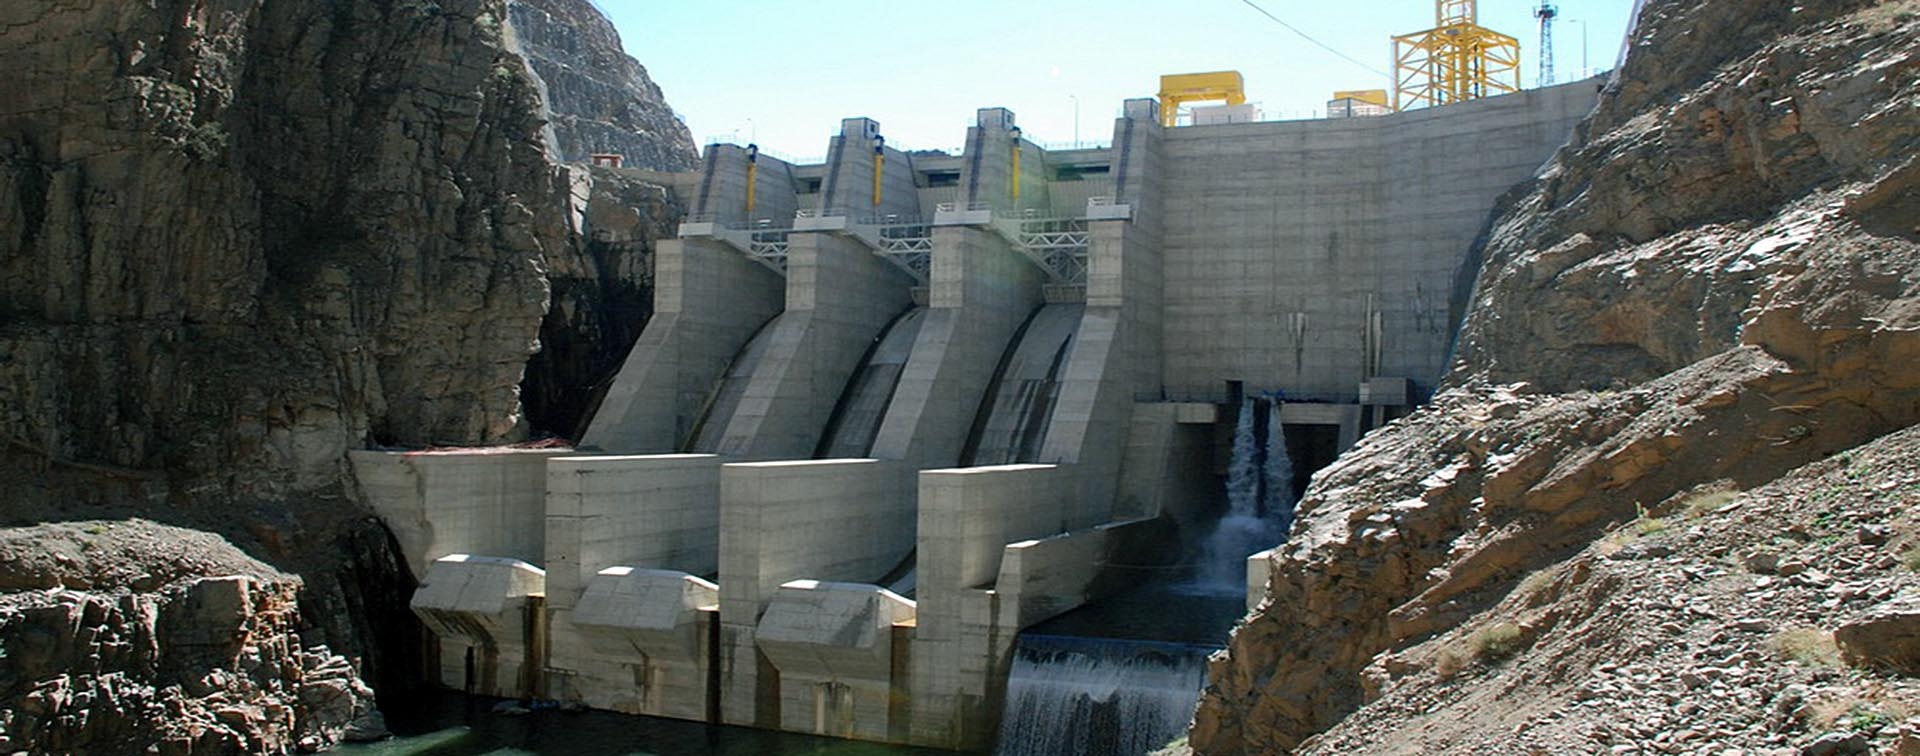 Güllübağ RCC Dam and HEPP (96 MW)